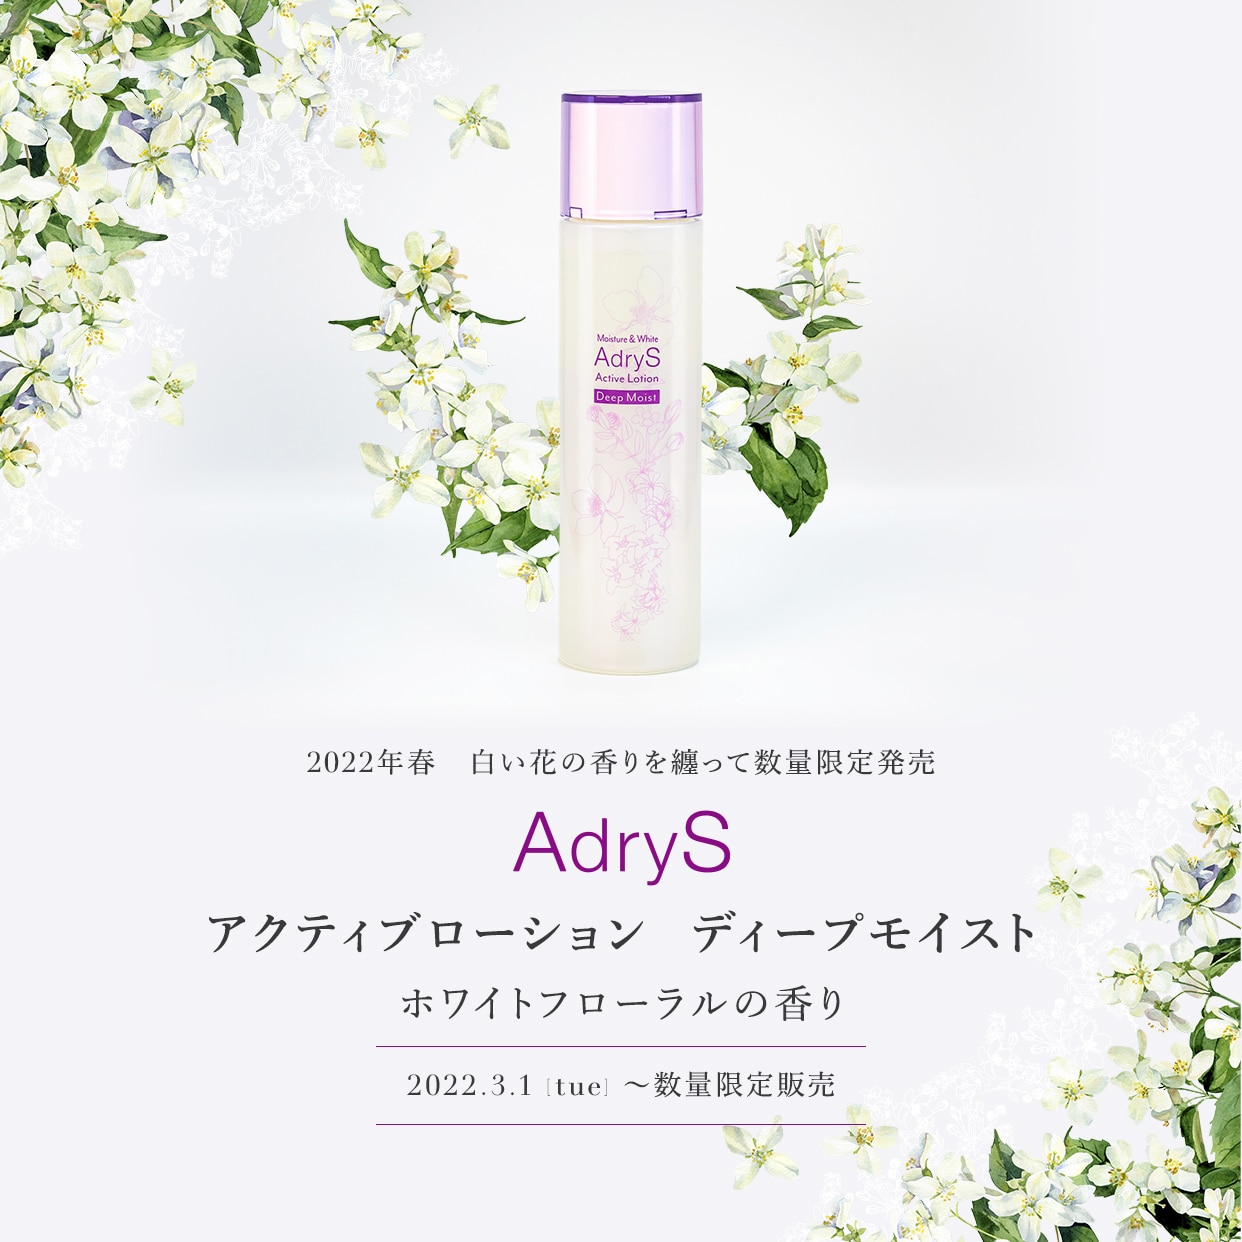 2022年春 AdryS アクティブローション ディープモイスト ホワイトフローラルの香り　2022.3.1(tue)～数量限定販売